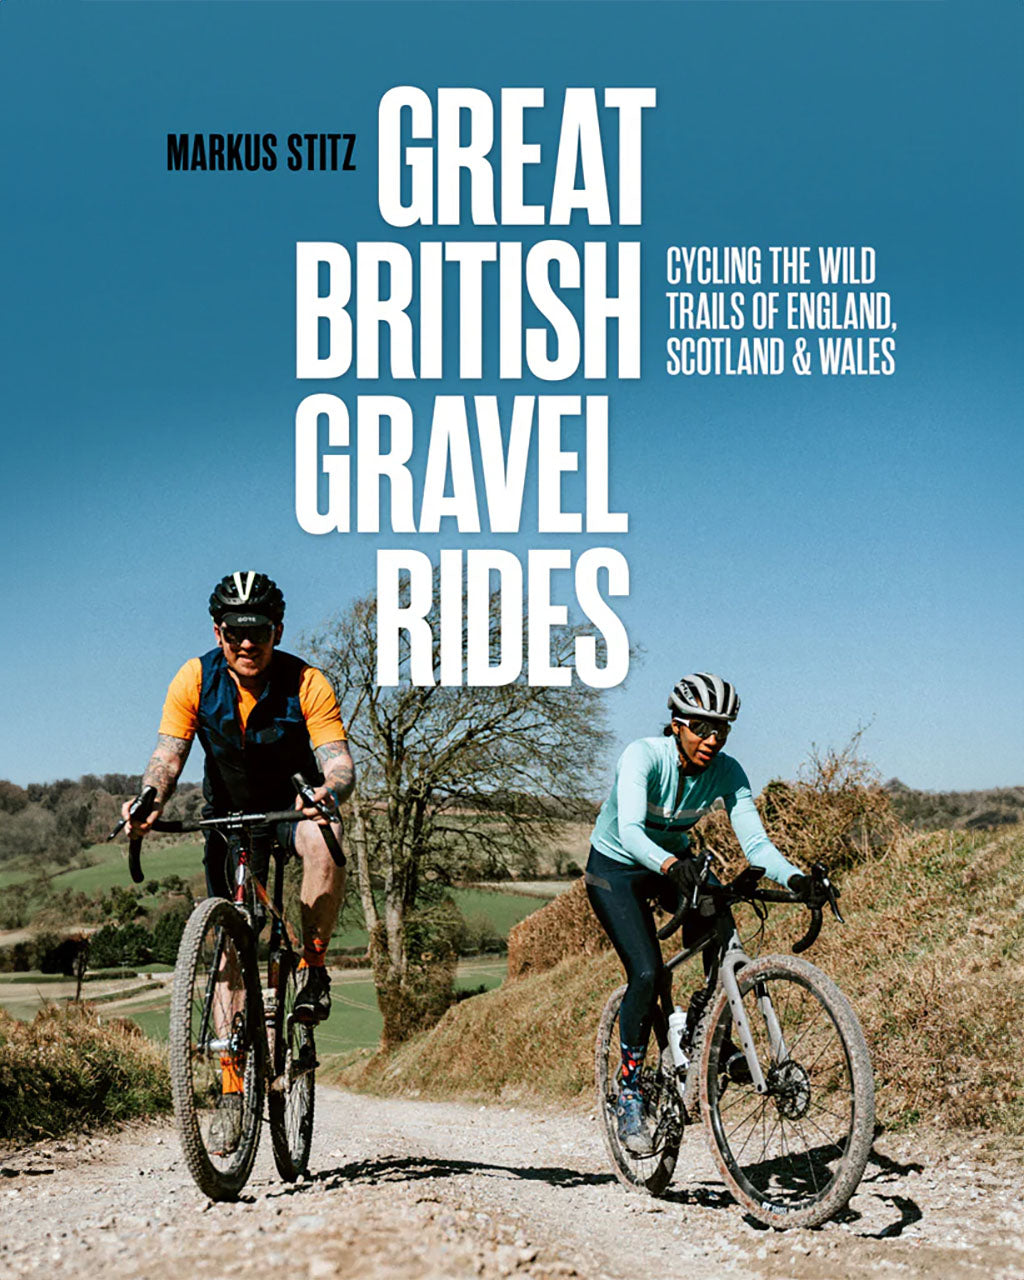 Great British Gravel Rides by Markus Stitz